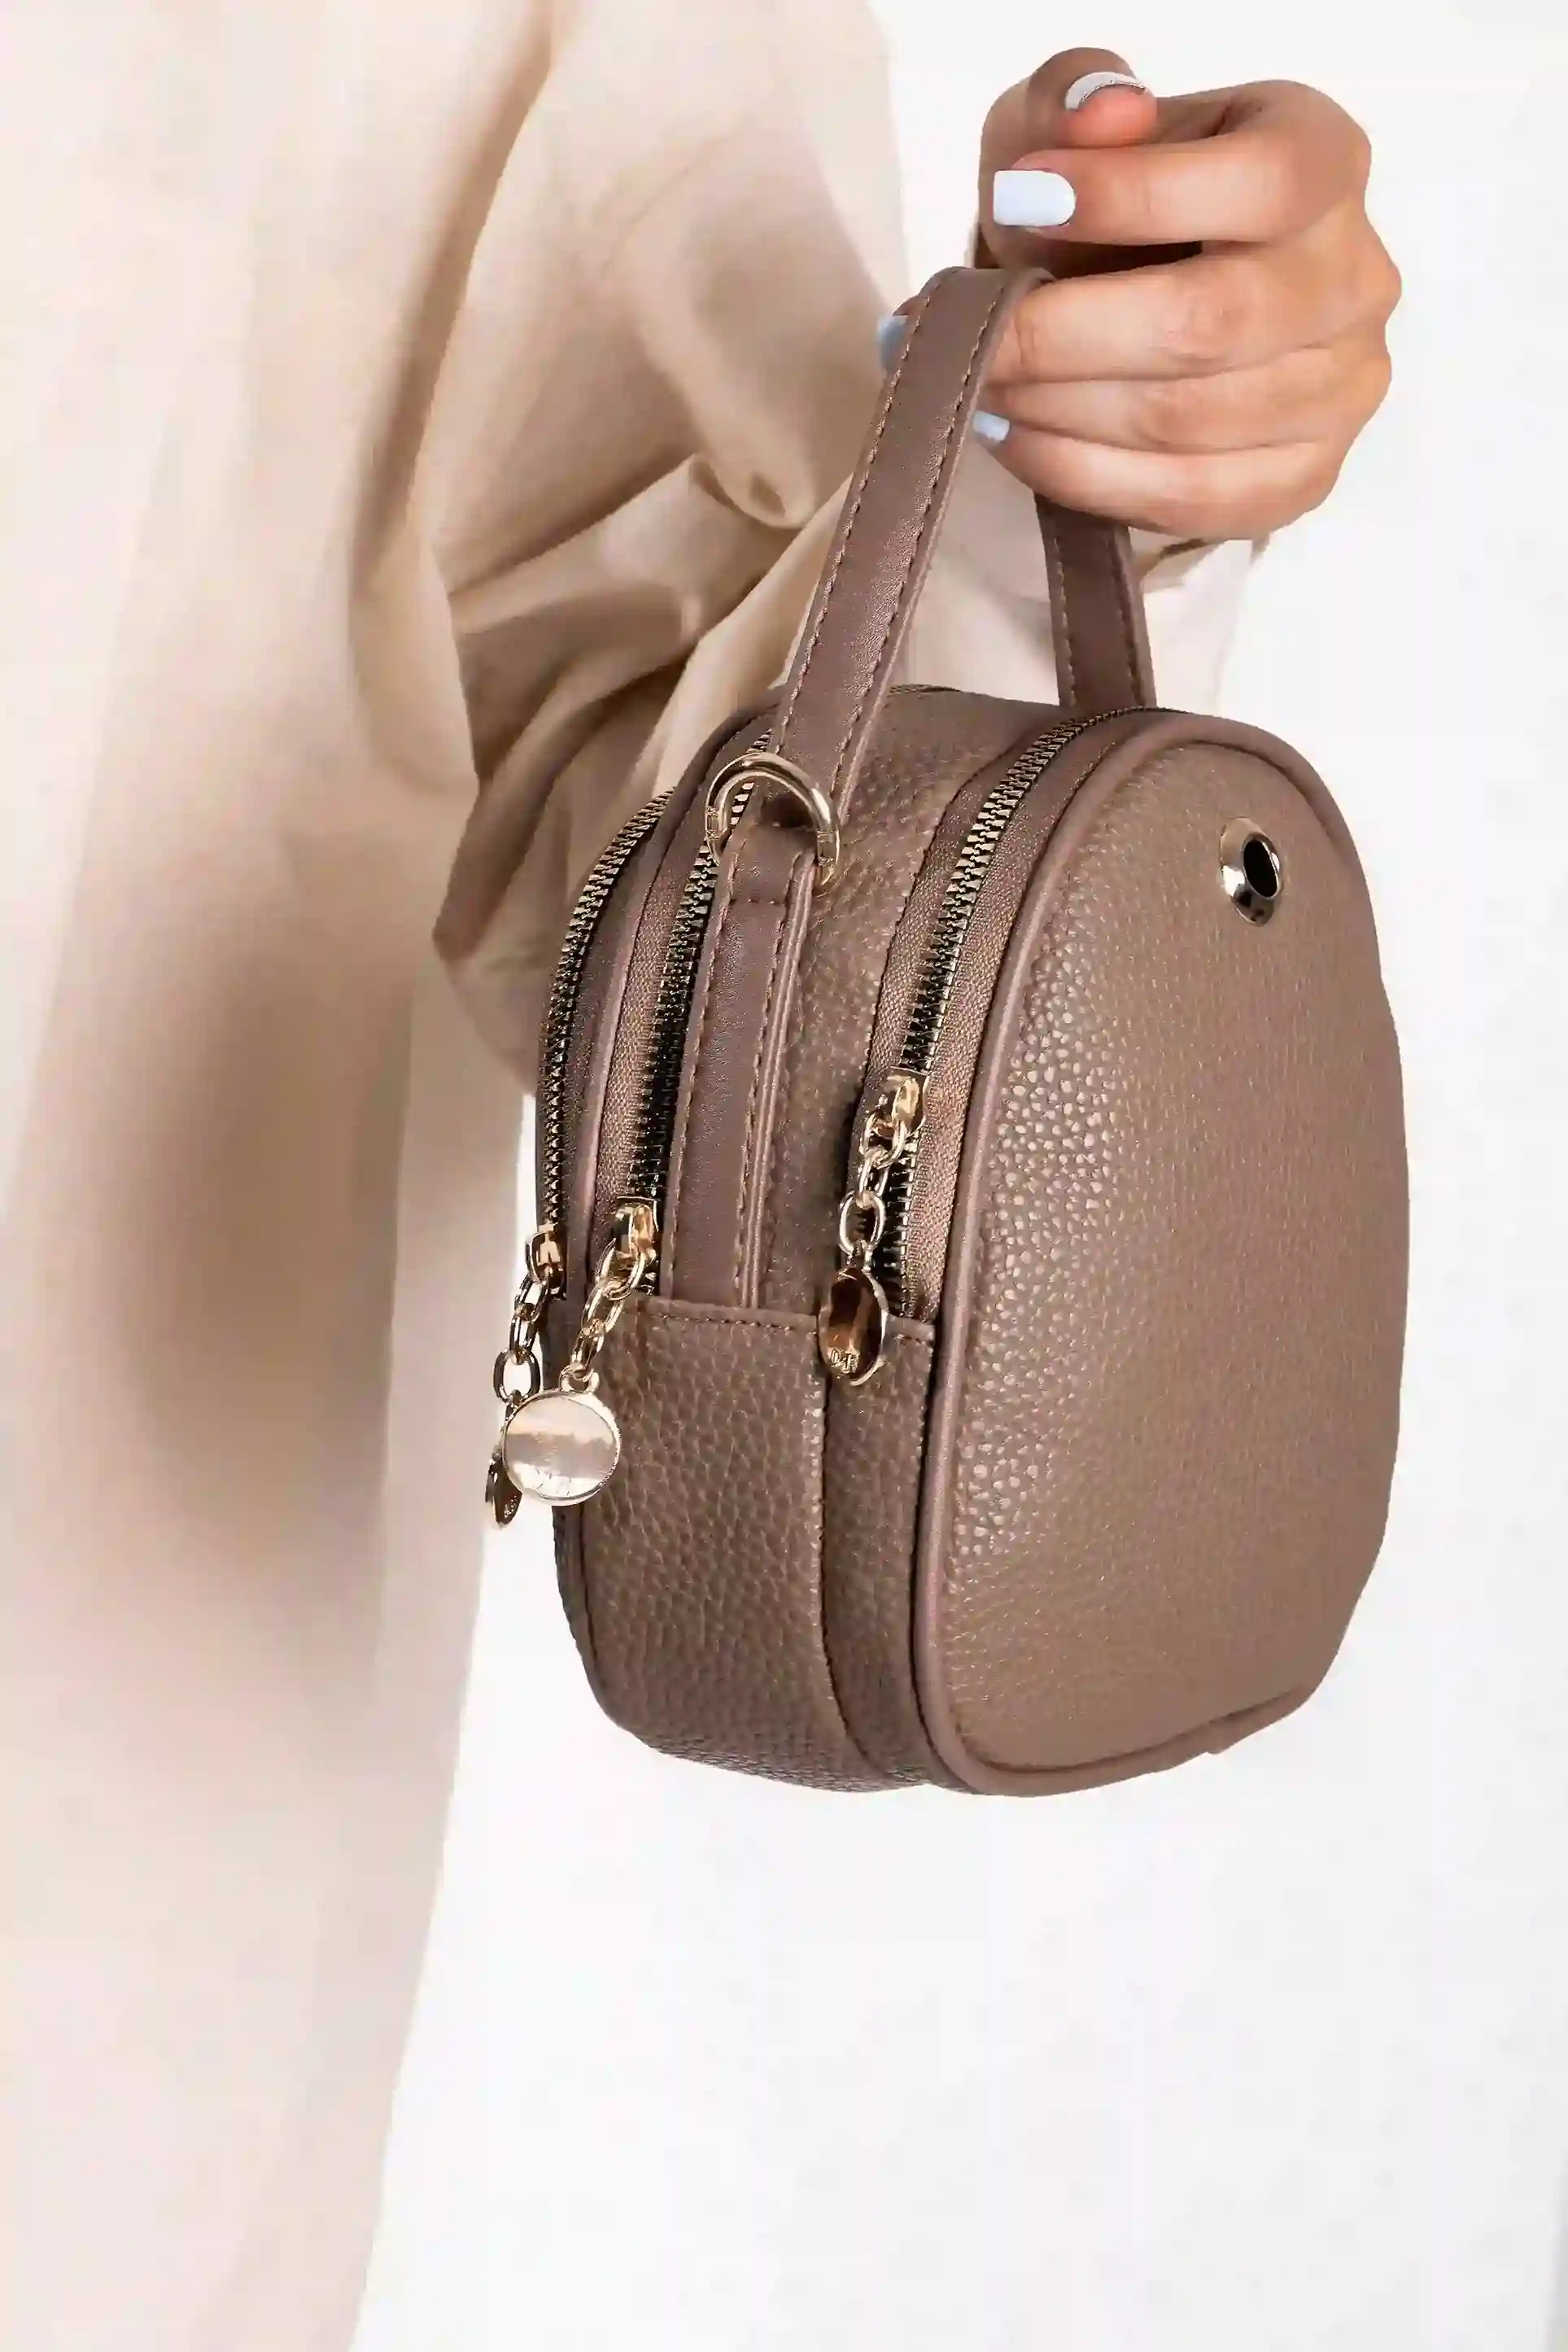 کیف کوچک آمیلا 